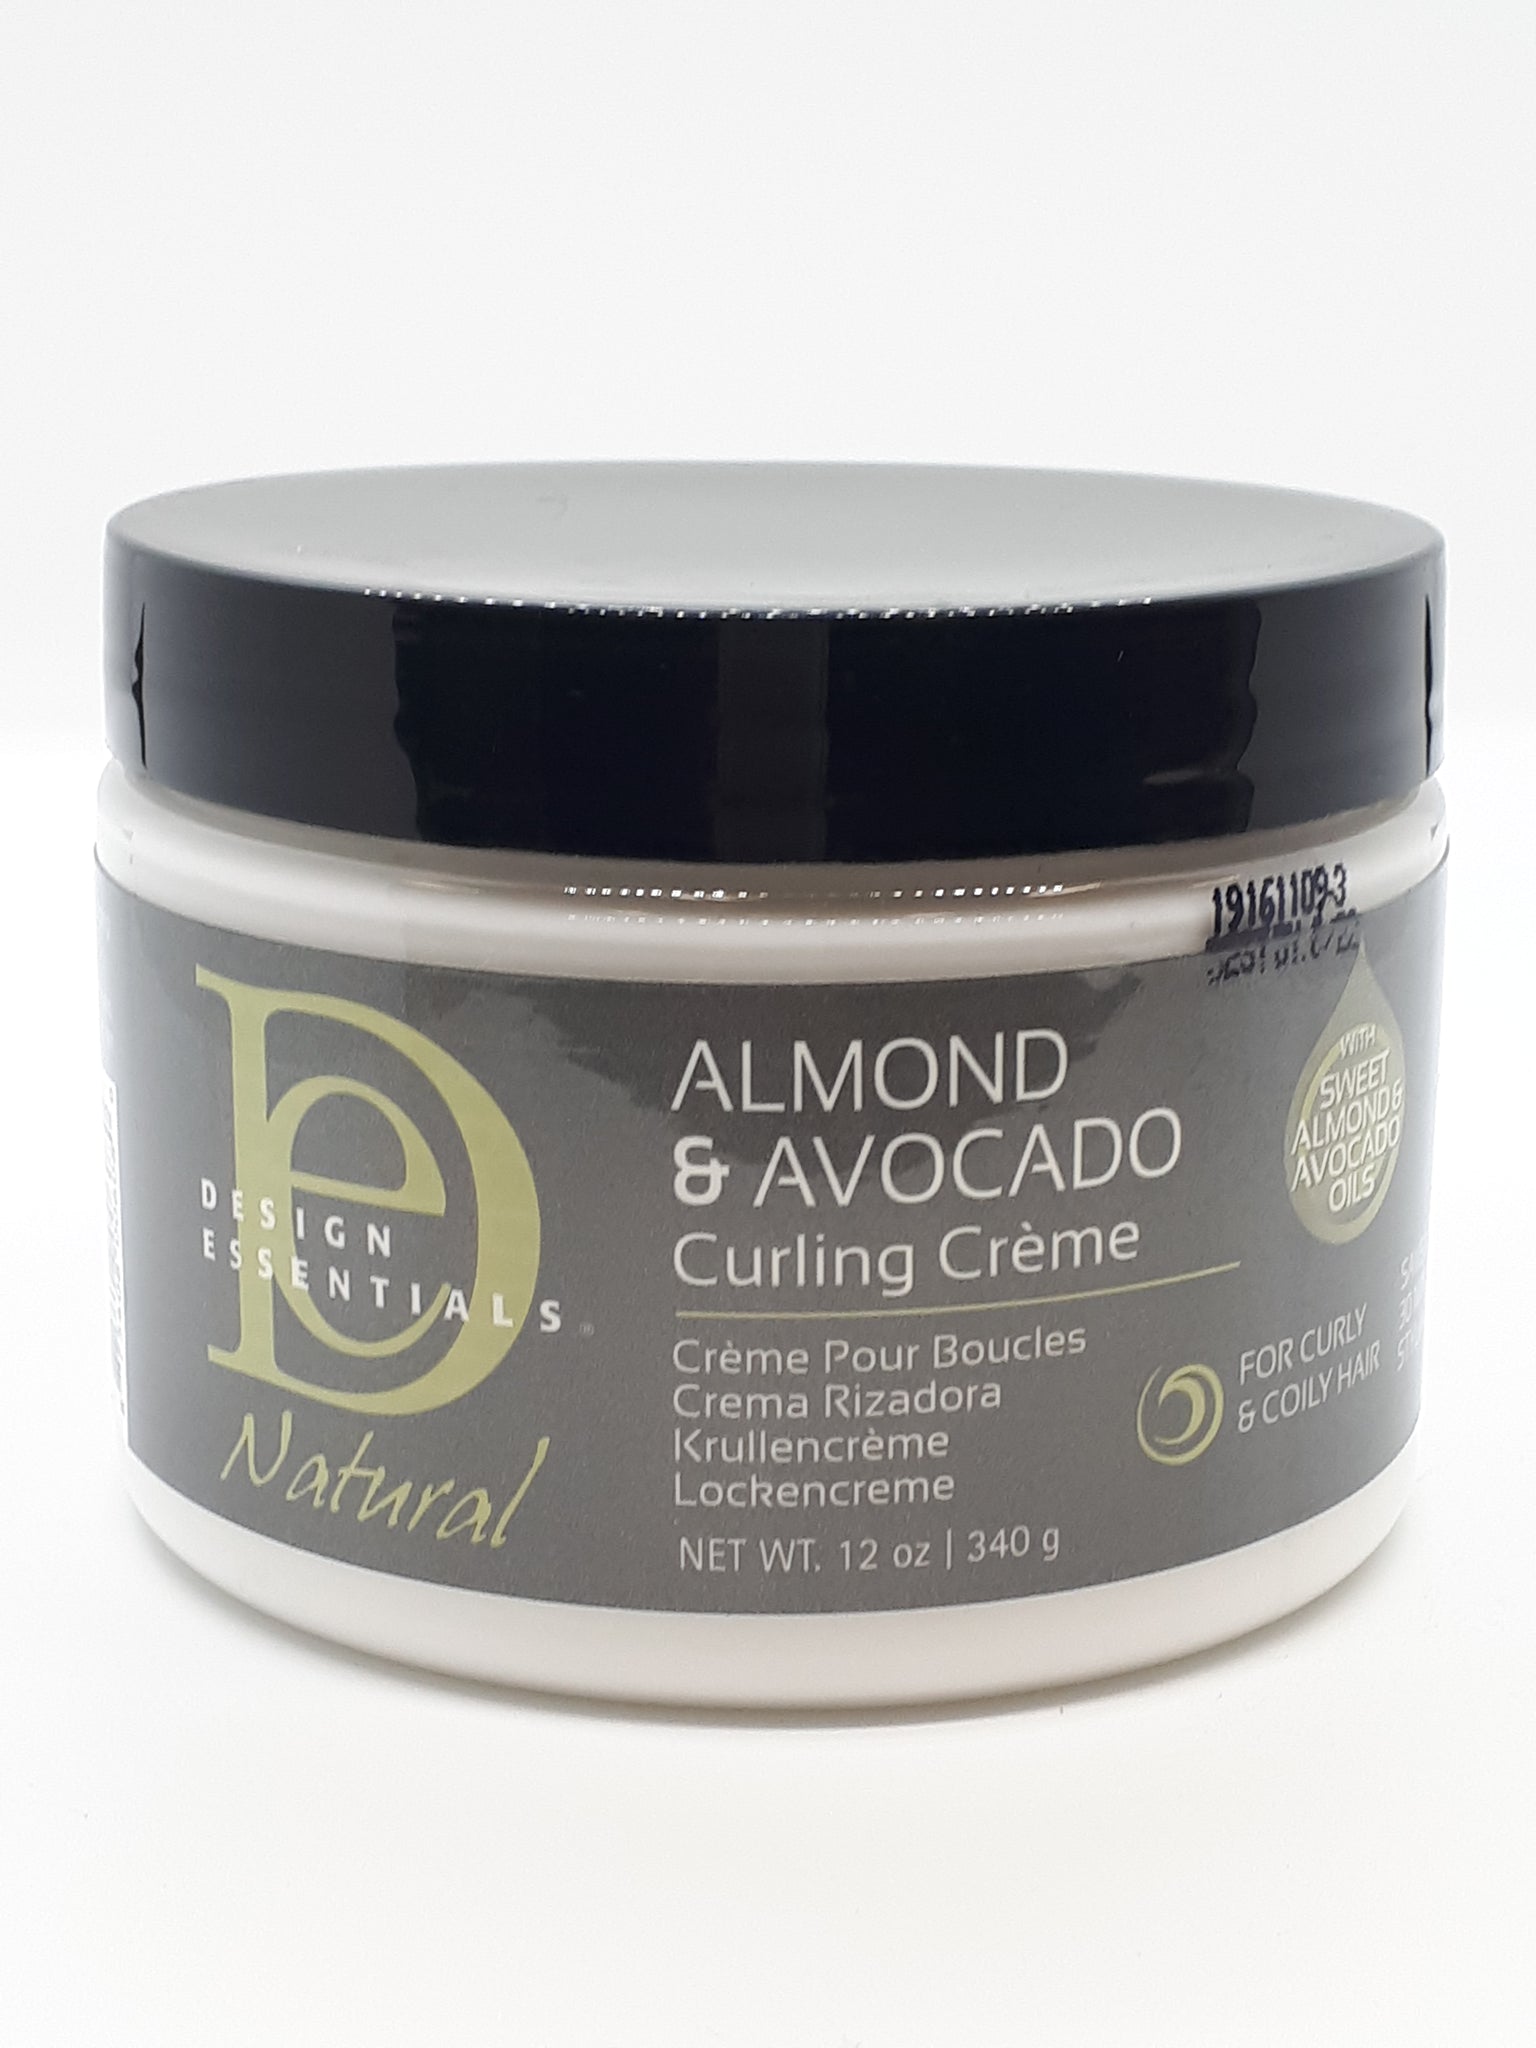 DESIGN ESSENTIALS - Almond & Avocado Curling Crème